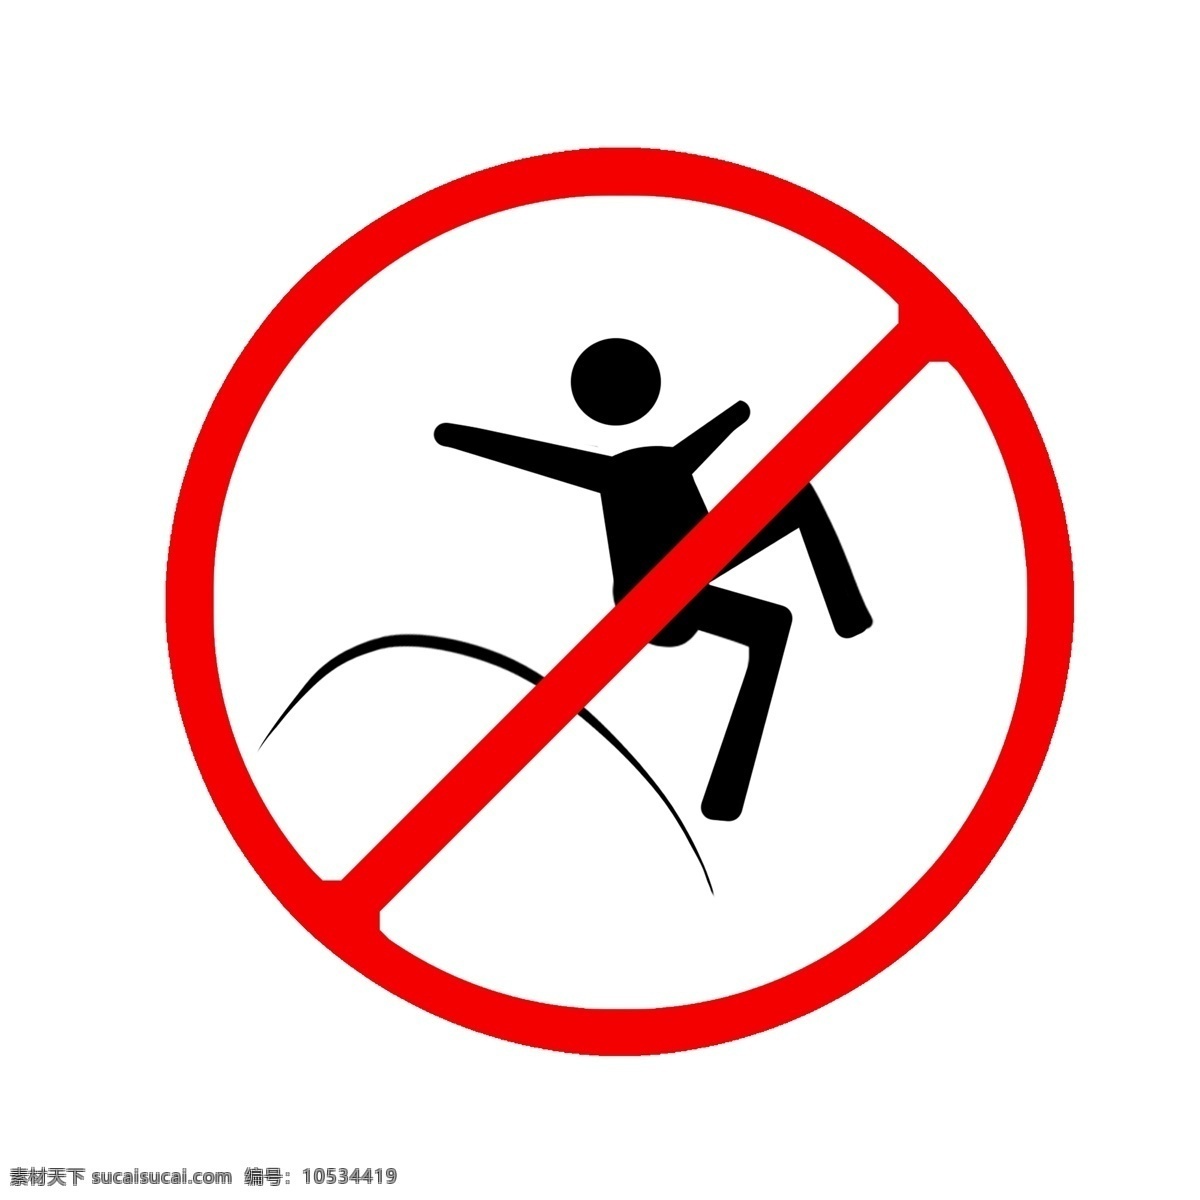 安全 提示 禁止 跳跃 温馨提示 安全提示 禁止跳跃 红色禁止跳跃 禁止牌 警告牌插画 禁止警告牌